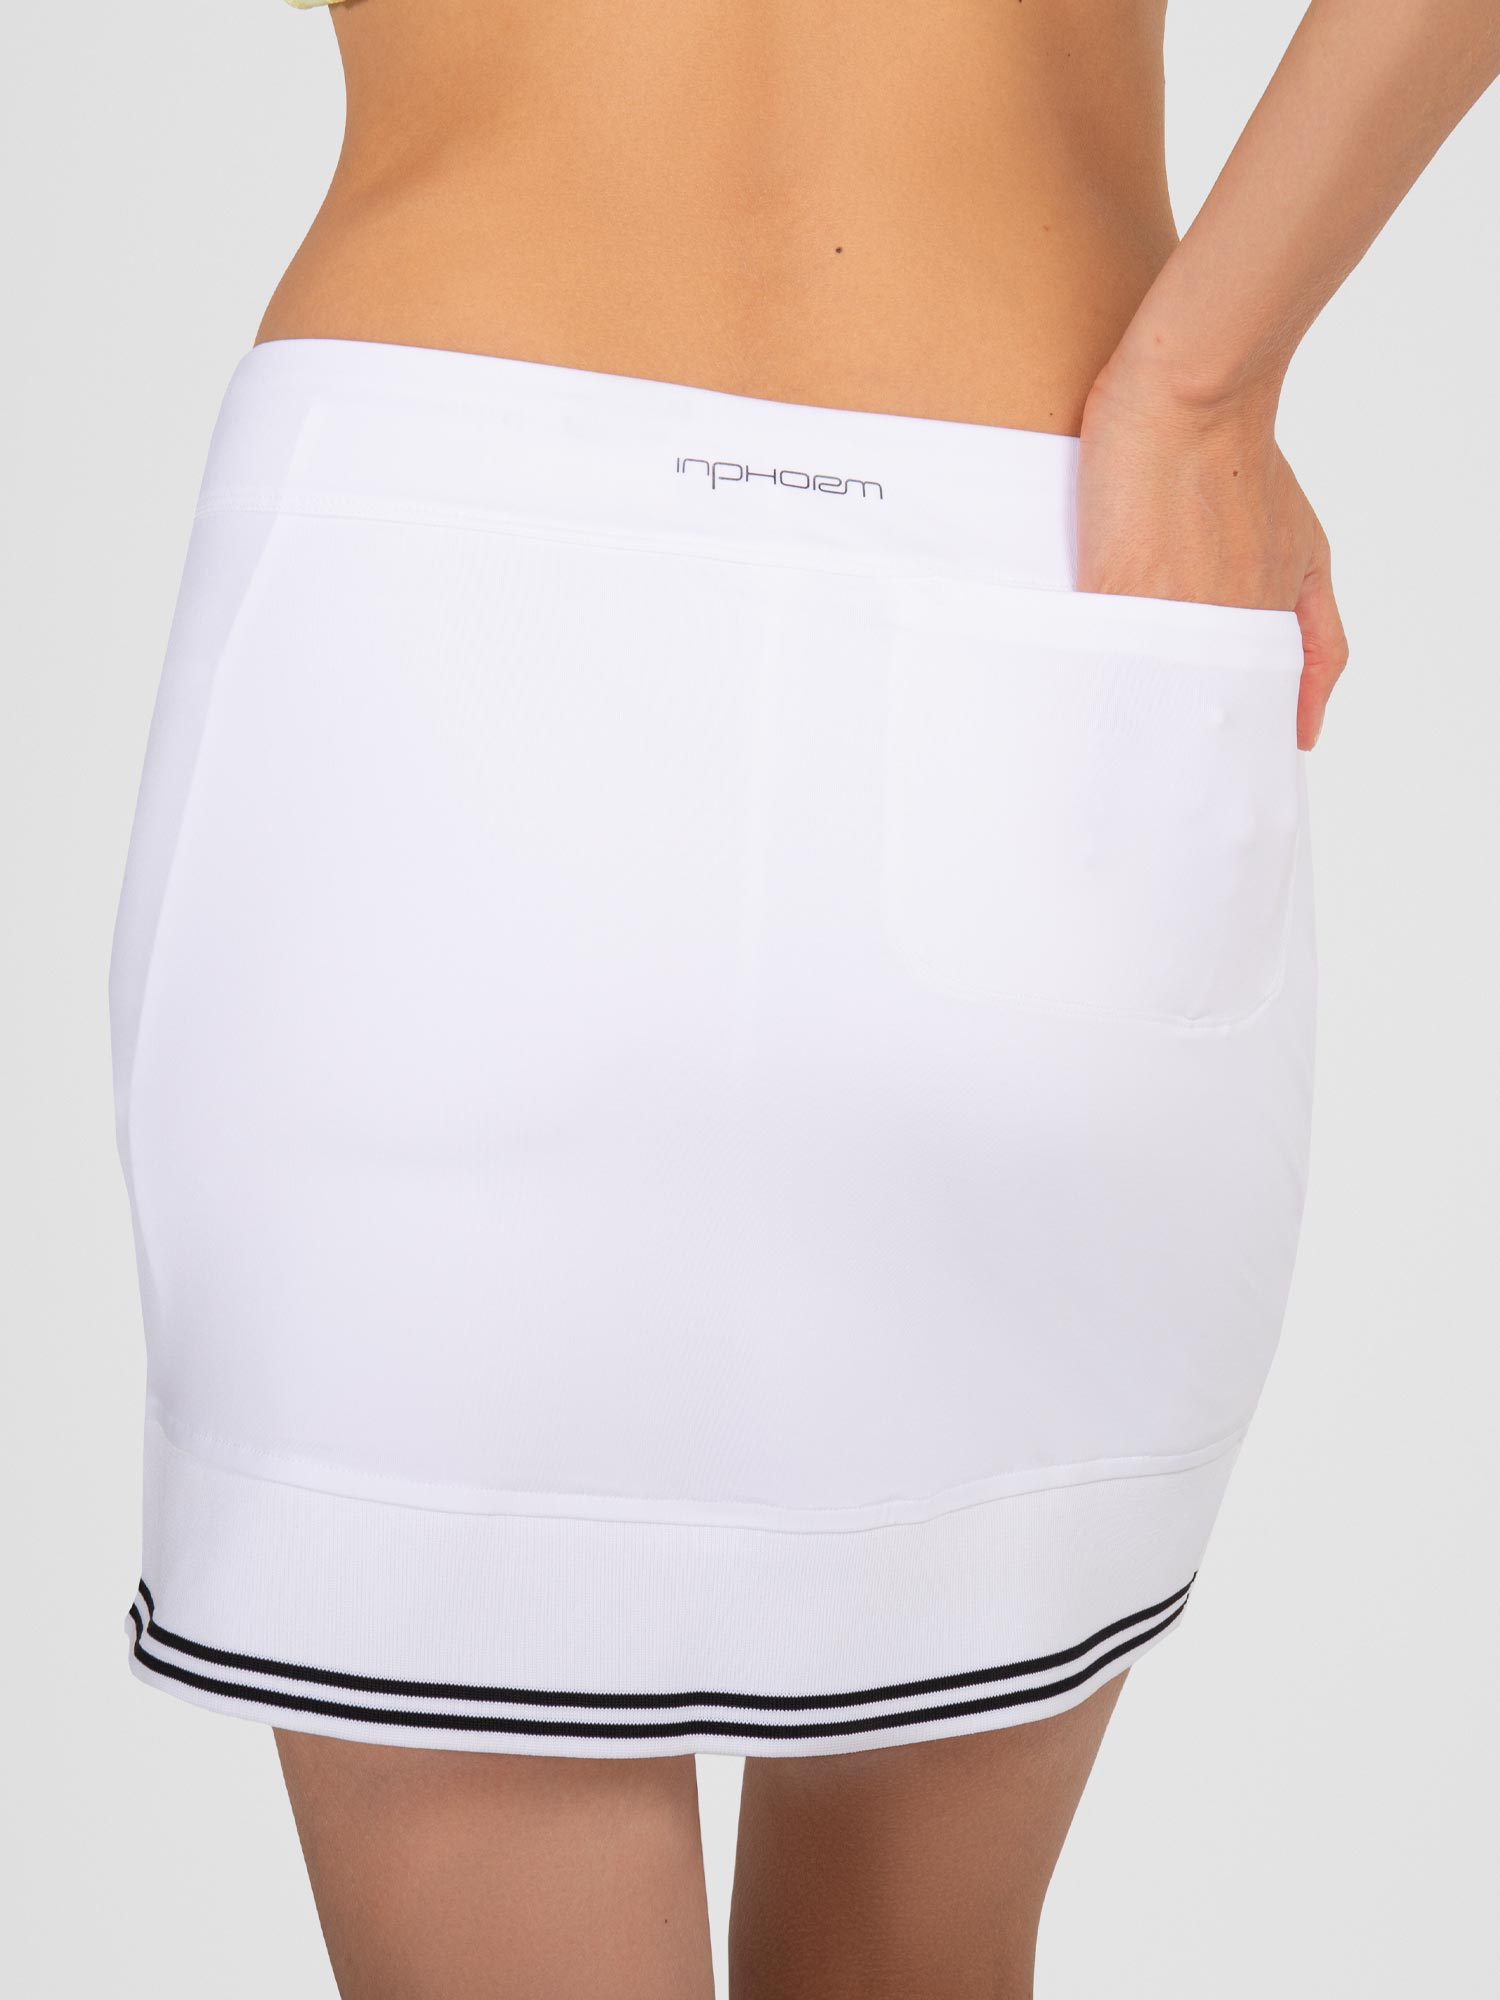 Lilian 15" Skirt - White/Black